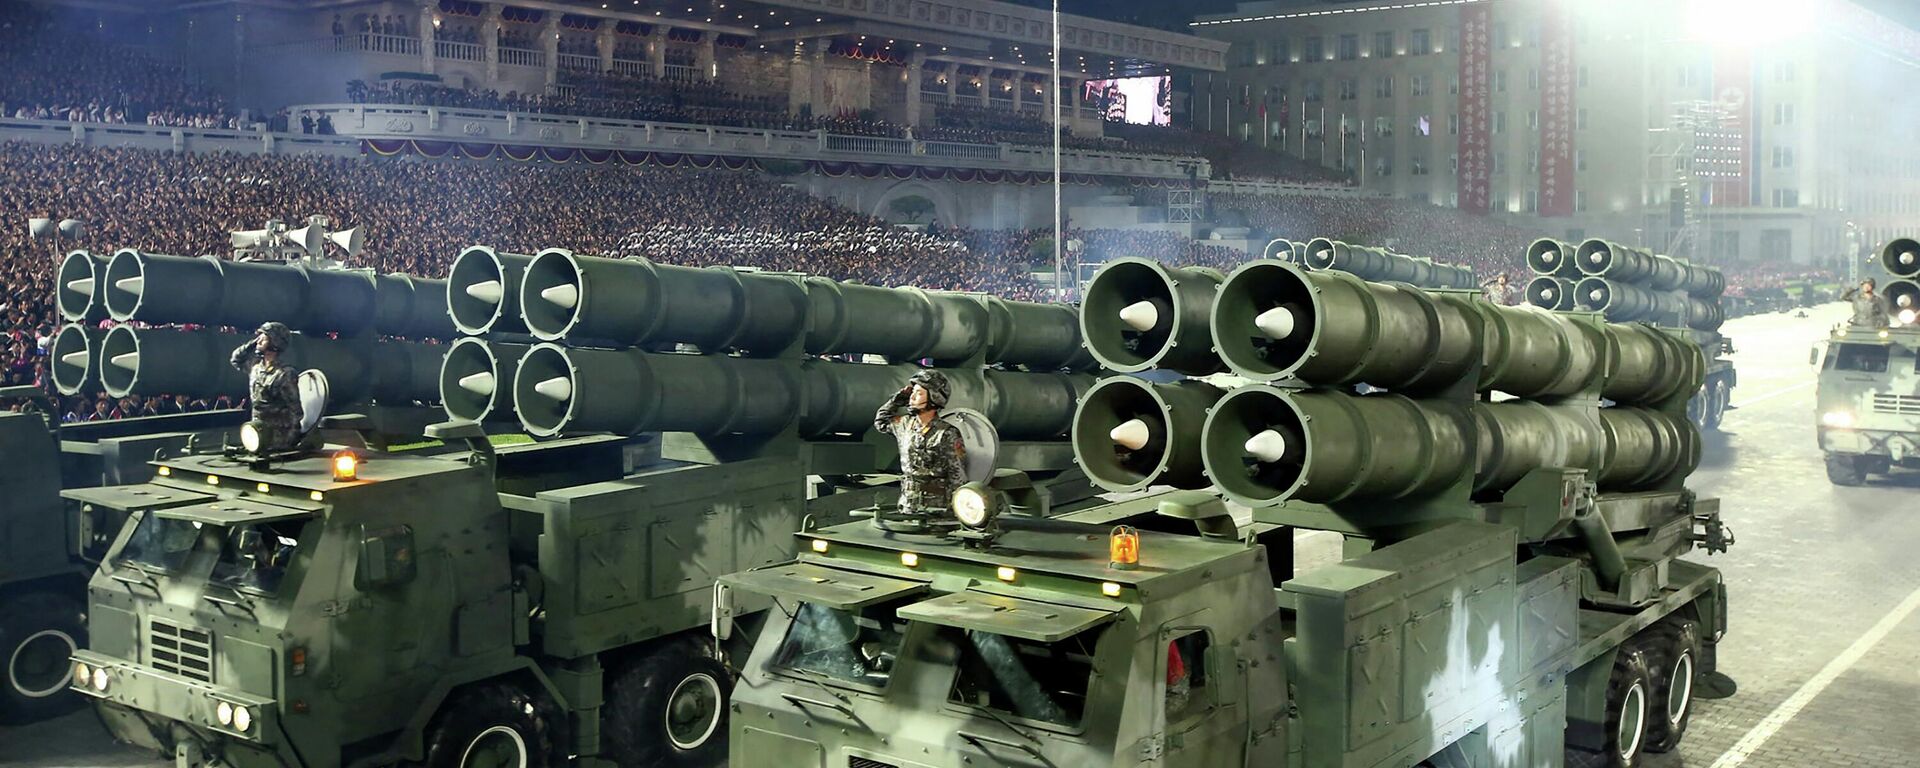 قاذفات صواريخ خلال عرض عسكري للاحتفال بالذكرى الـ90 لتأسيس الجيش الثوري الشعبي الكوري الشمالي في كيم إيل. ساحة سونغ في بيونغ يانغ. 25 أبريل 2022 - سبوتنيك عربي, 1920, 29.07.2023